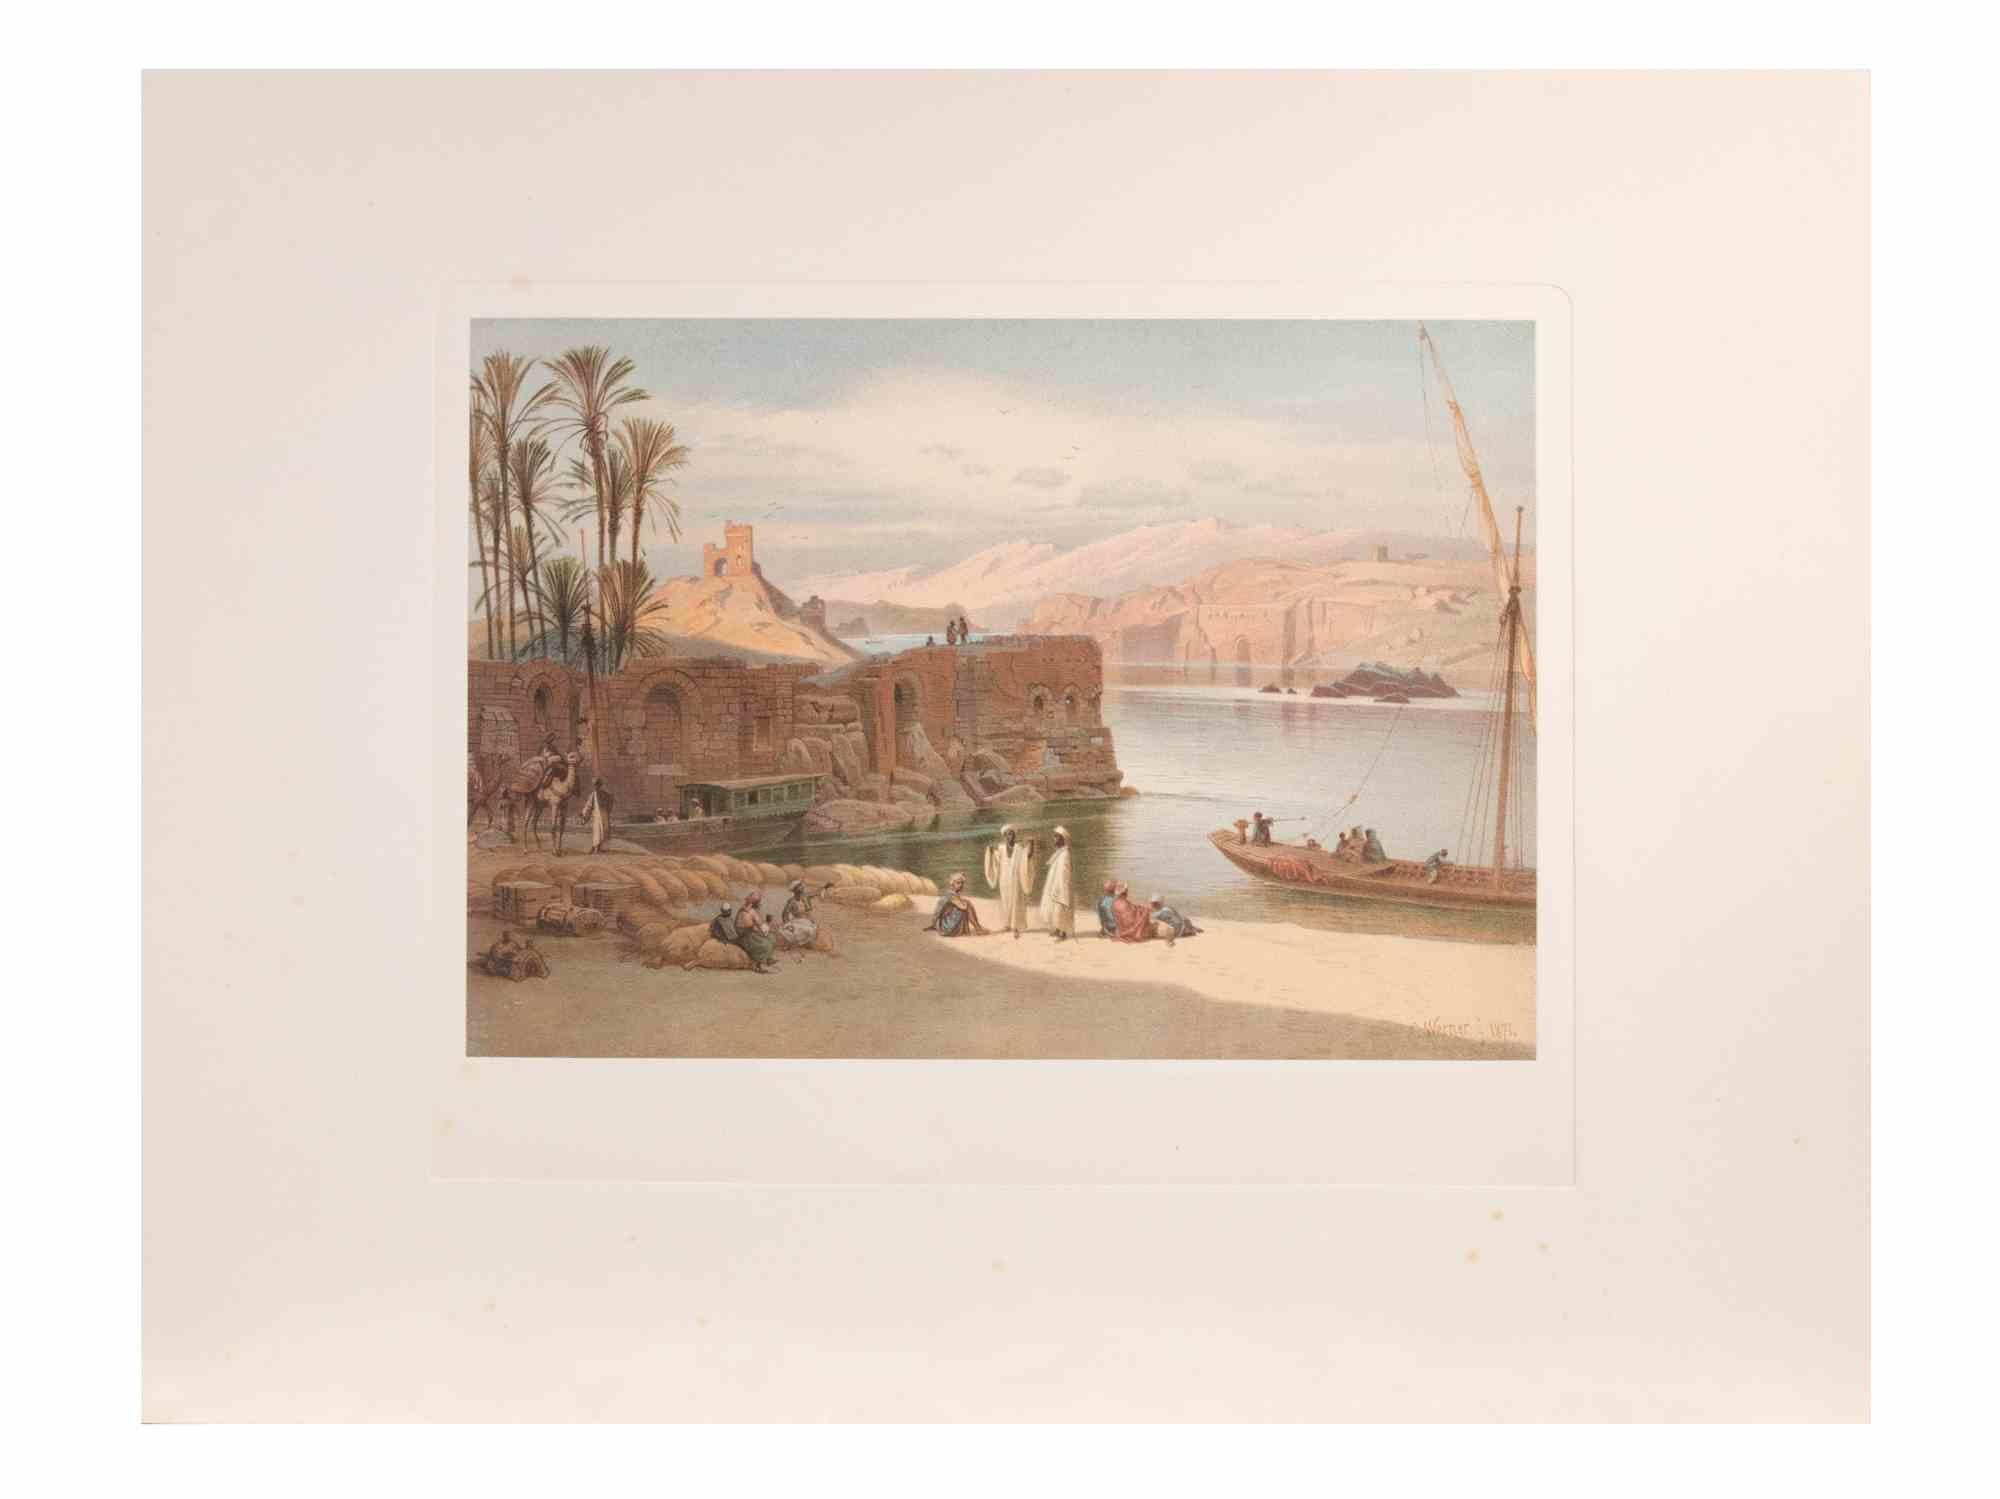 Der Nil ist ein modernes Kunstwerk, das d'apres Karl Werner 

Gemischtfarbige Chromolithographie. 

Das Werk ist den Aquarellen nachempfunden, die der Künstler während einer Reise nach Ägypten zwischen 1862 und 1865 anfertigte.

Die vorliegende